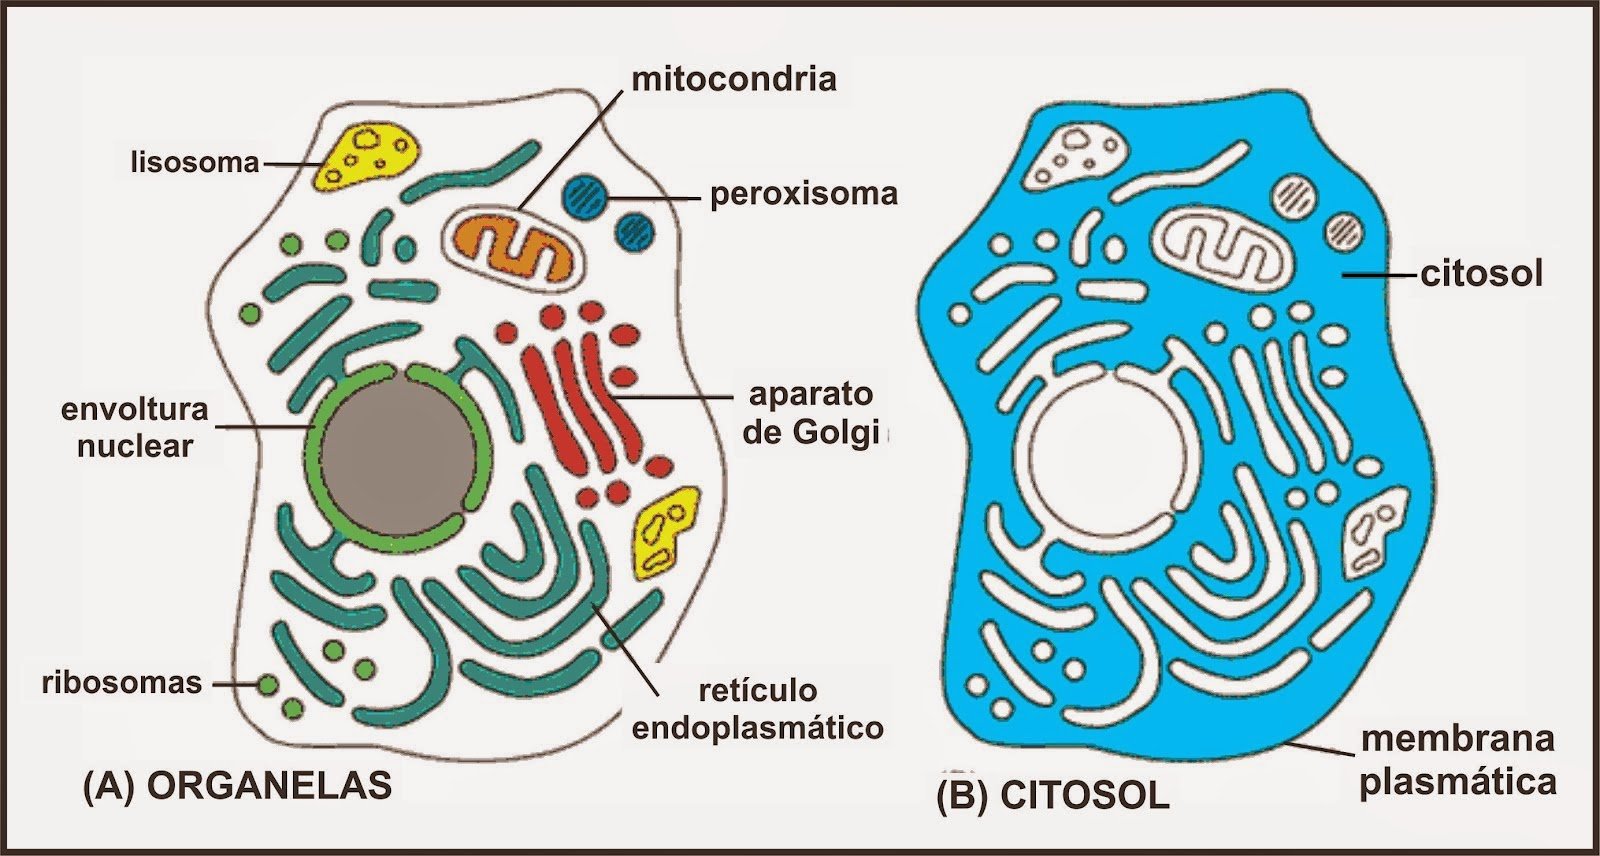 Цитоплазма значение этой структуры в жизнедеятельности клетки